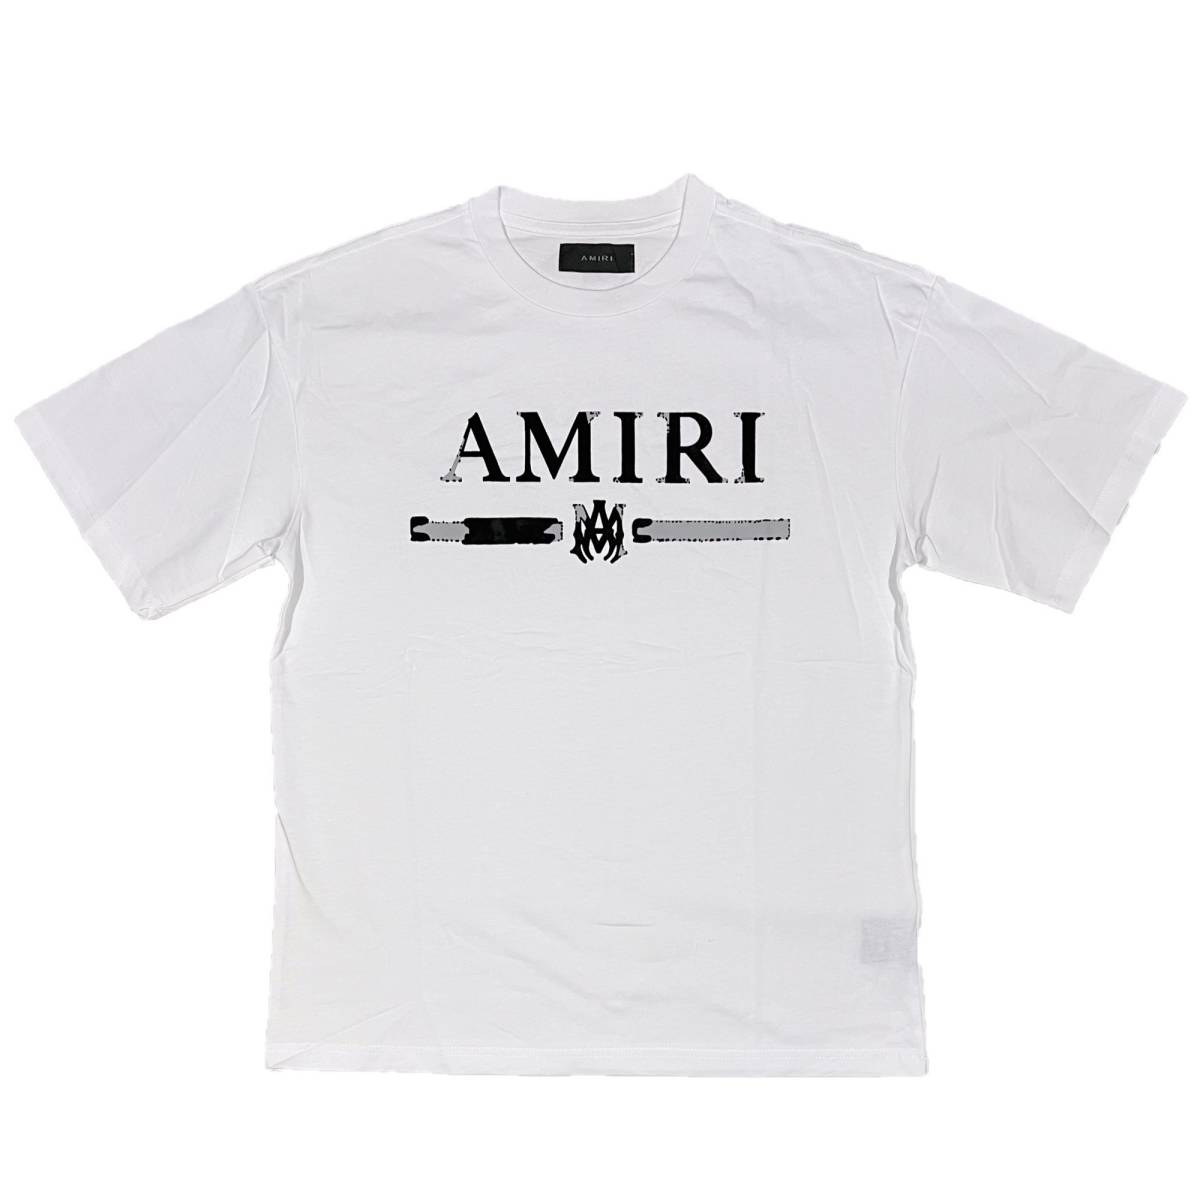 [並行輸入品] AMIRI アミリ M.A. Bar Appliqu S/S T shirt MAバー 半袖 Tシャツ (ホワイト) (M)